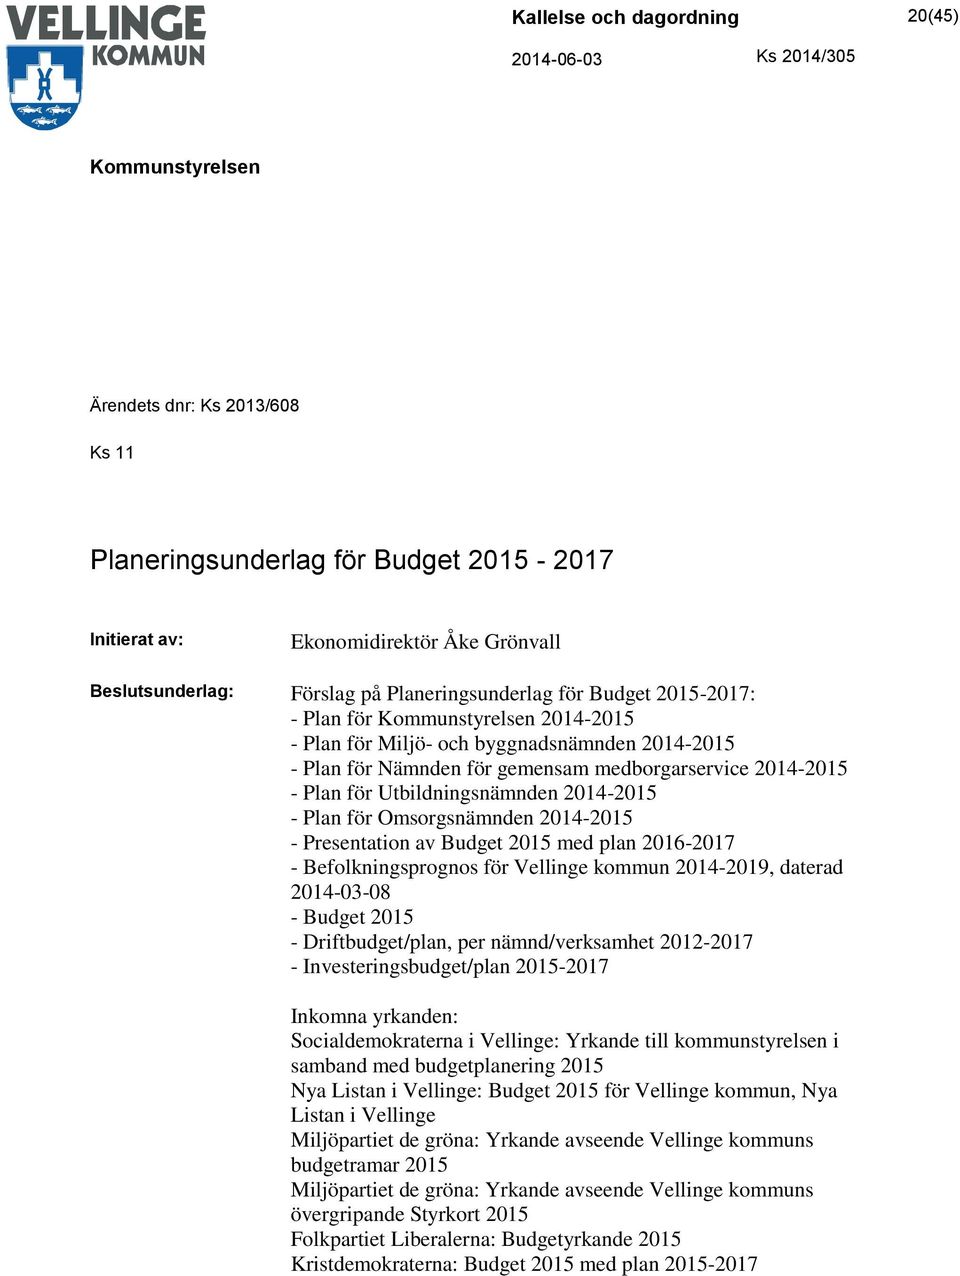 Budget 2015 med plan 2016-2017 - Befolkningsprognos för Vellinge kommun 2014-2019, daterad 2014-03-08 - Budget 2015 - Driftbudget/plan, per nämnd/verksamhet 2012-2017 - Investeringsbudget/plan